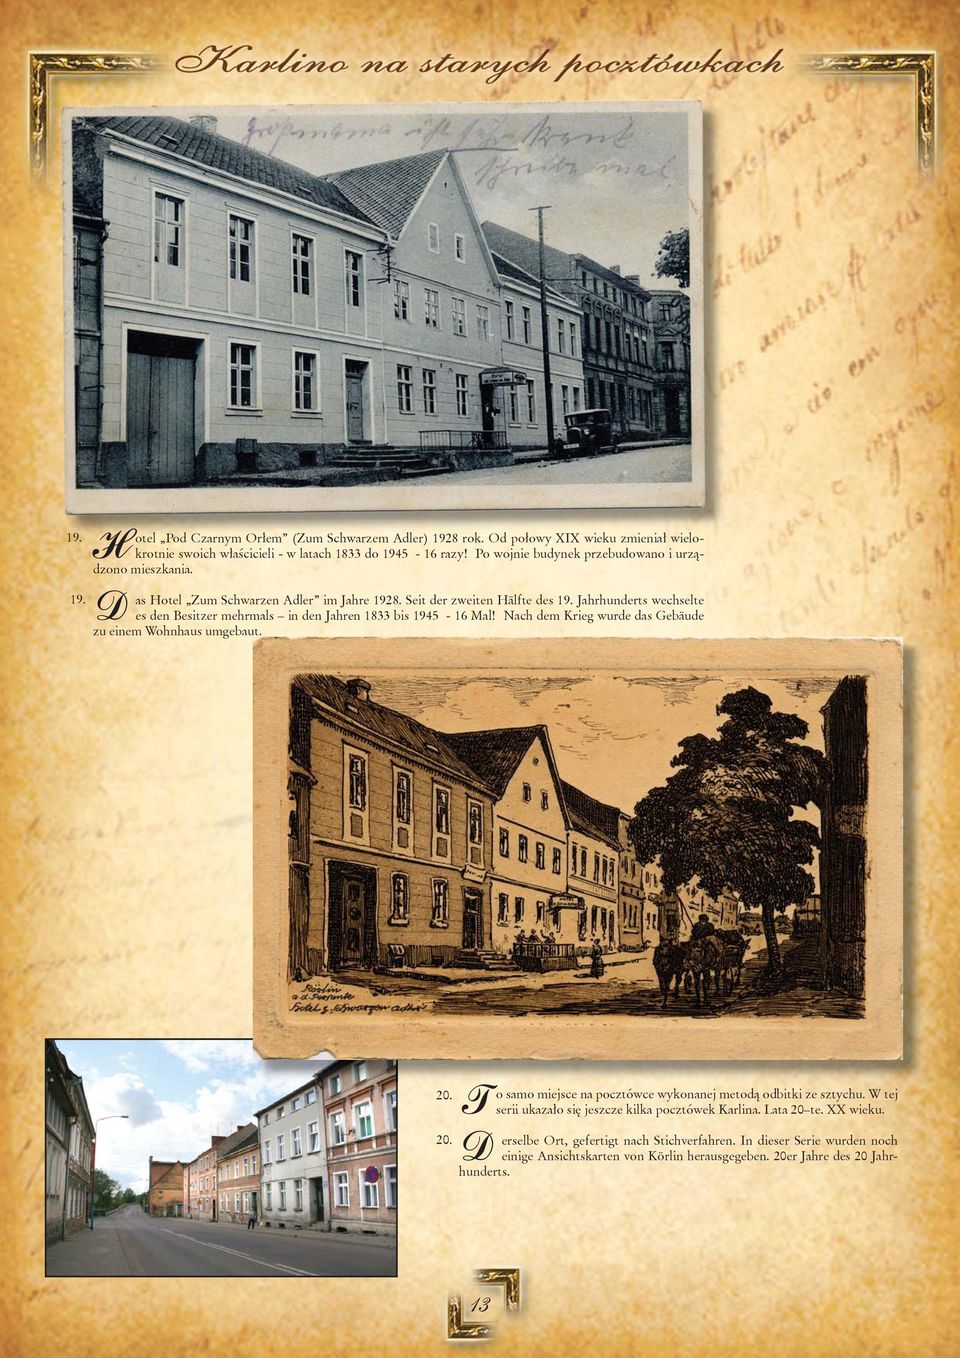 Jahrhunderts wechselte es den Besitzer mehrmals in den Jahren 1833 bis 1945-16 Mal! Nach dem Krieg wurde das Gebäude zu einem Wohnhaus umgebaut. 20.